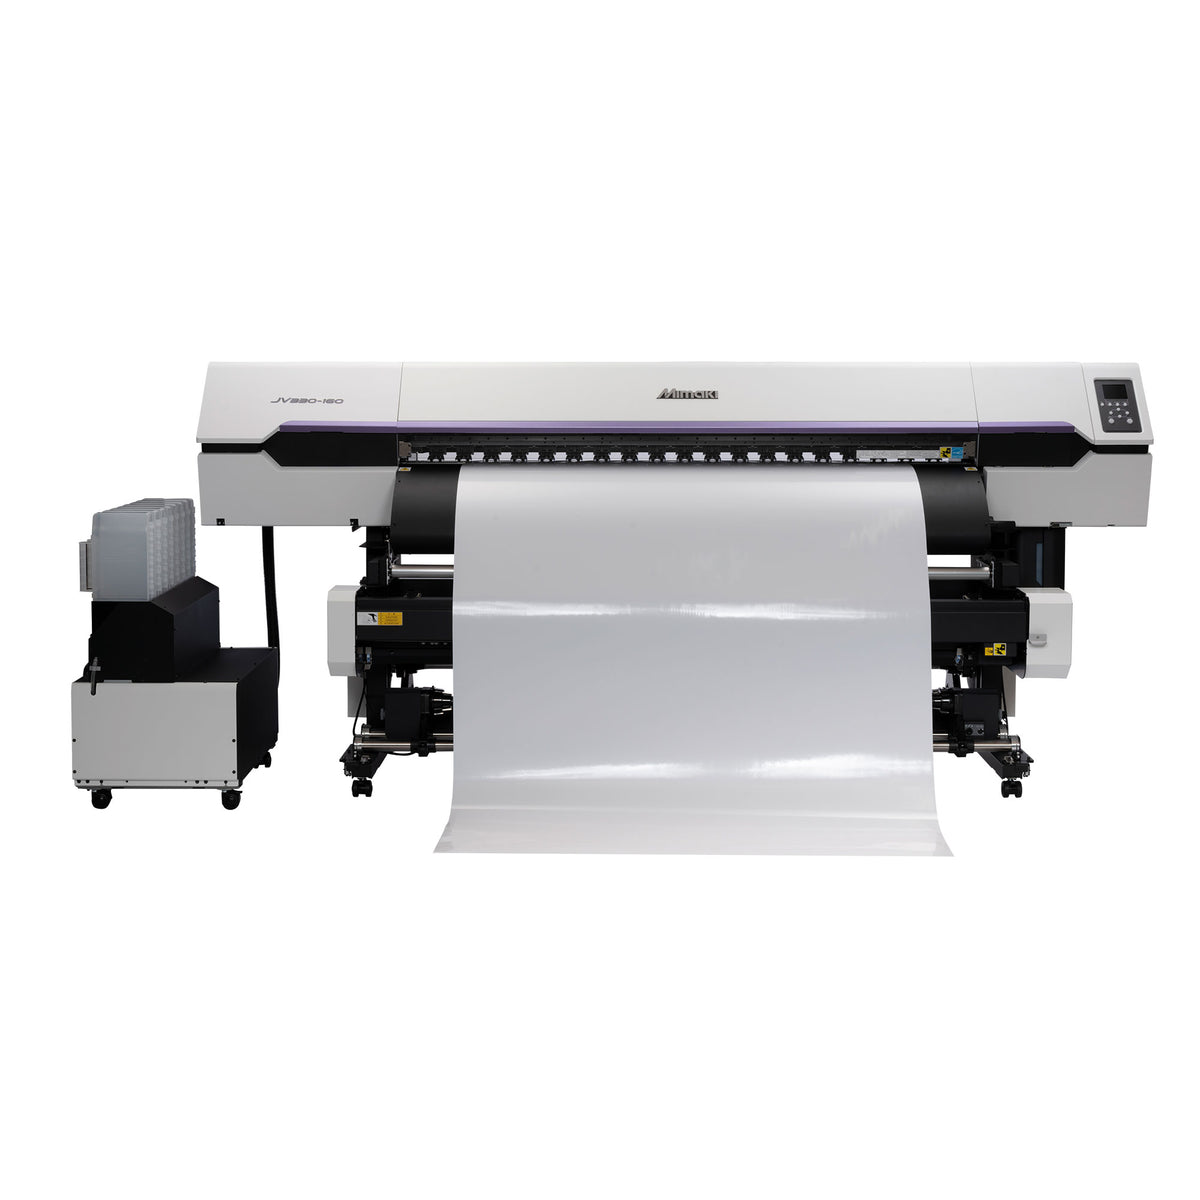 Mimaki JV330-160 Solvent Printer